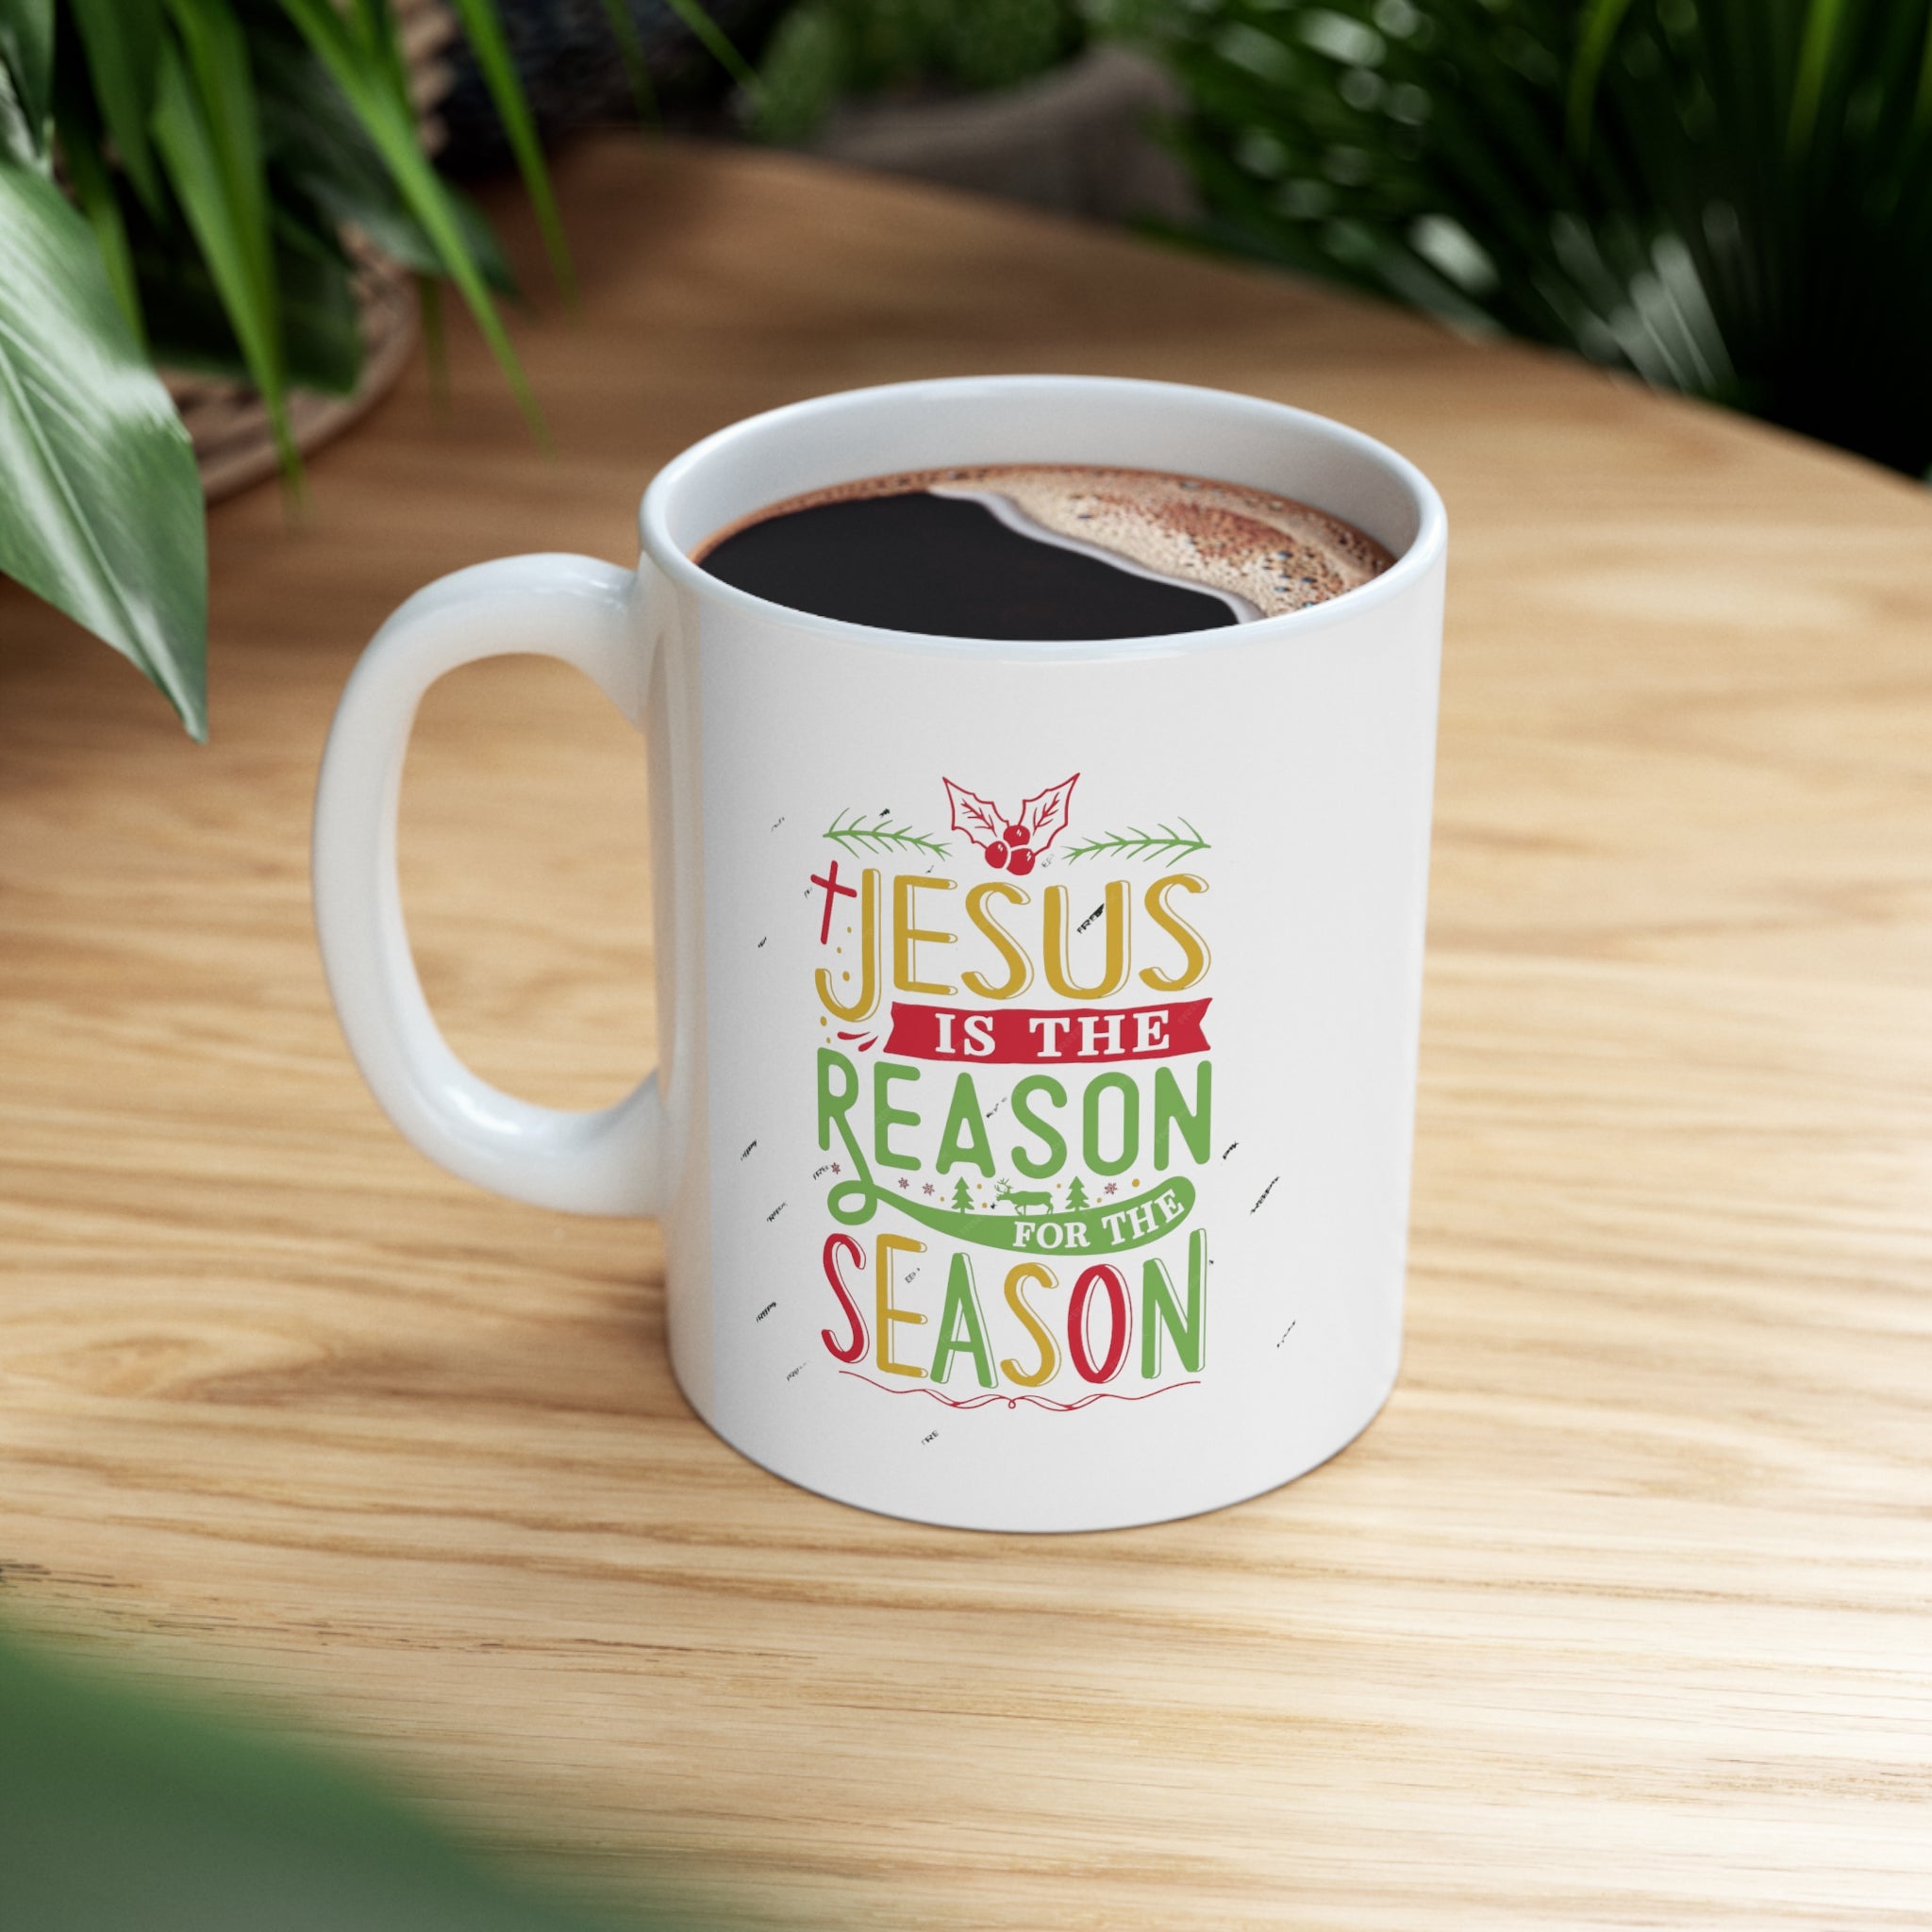 "Jesus is the reason" Ceramic Mug 11oz